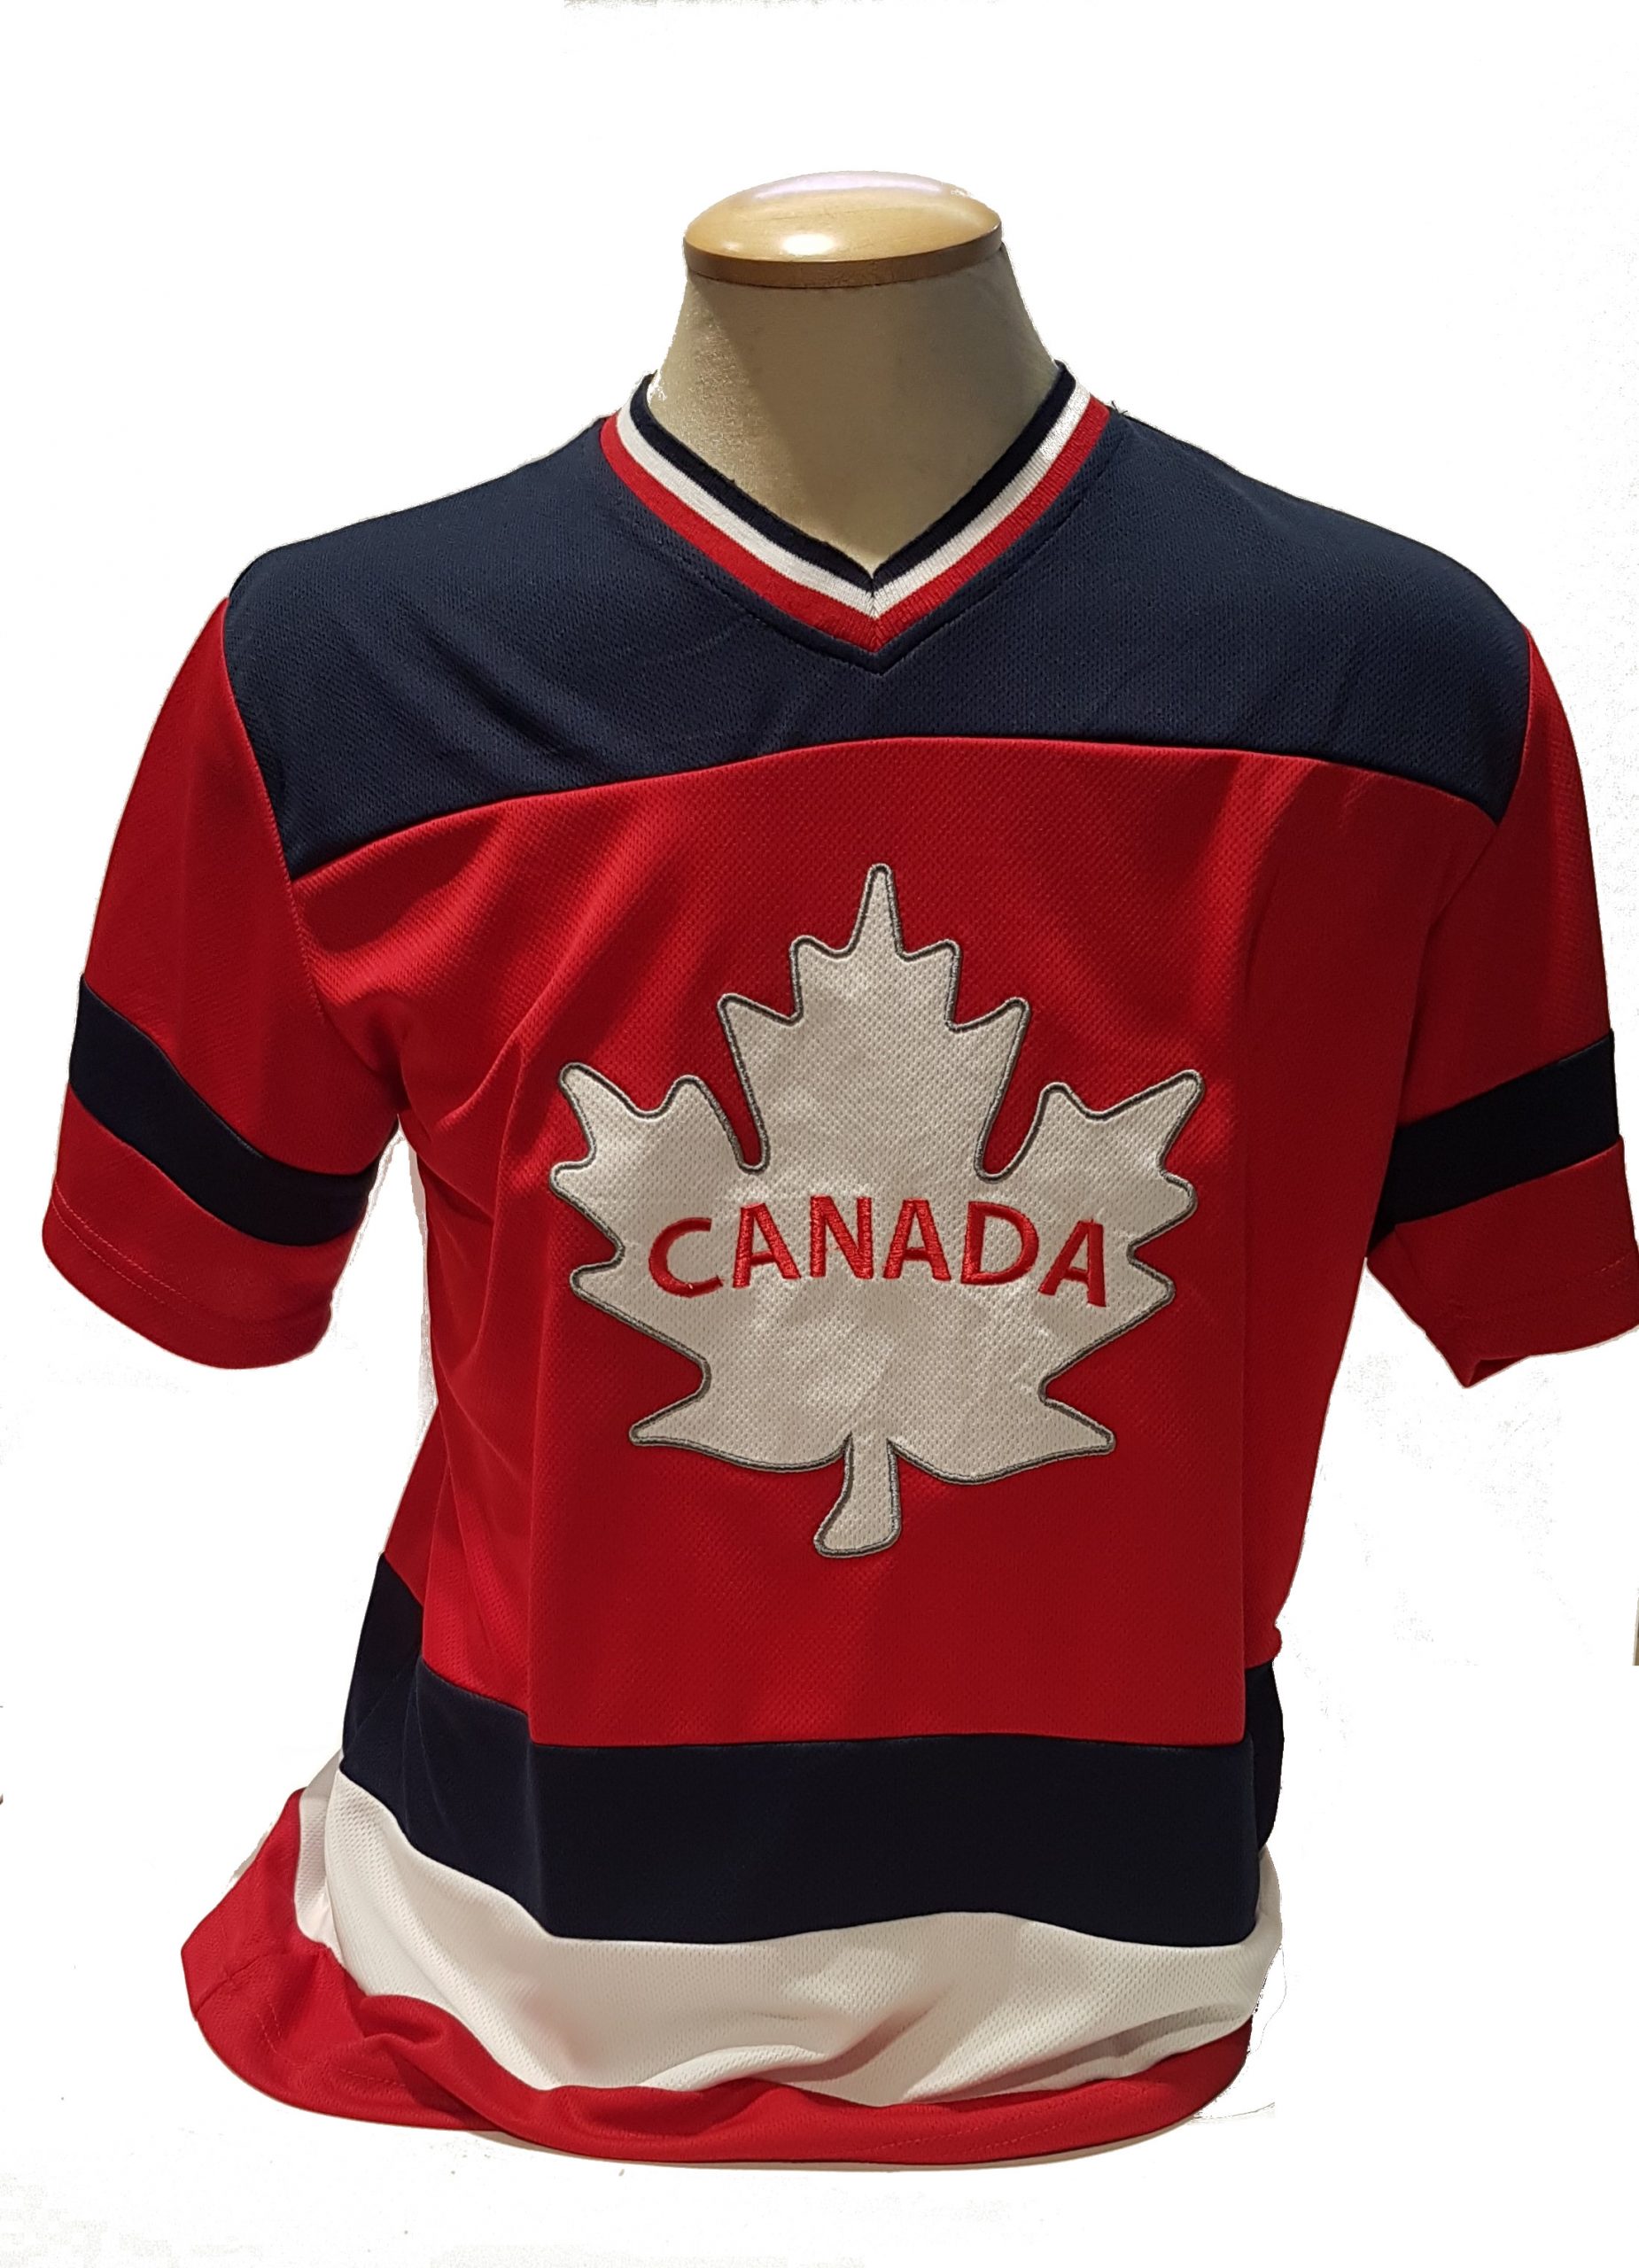 î€€Hockeyî€ î€€Jerseyî€ â€“ Adult â€“ Canadian Museum of History Boutique